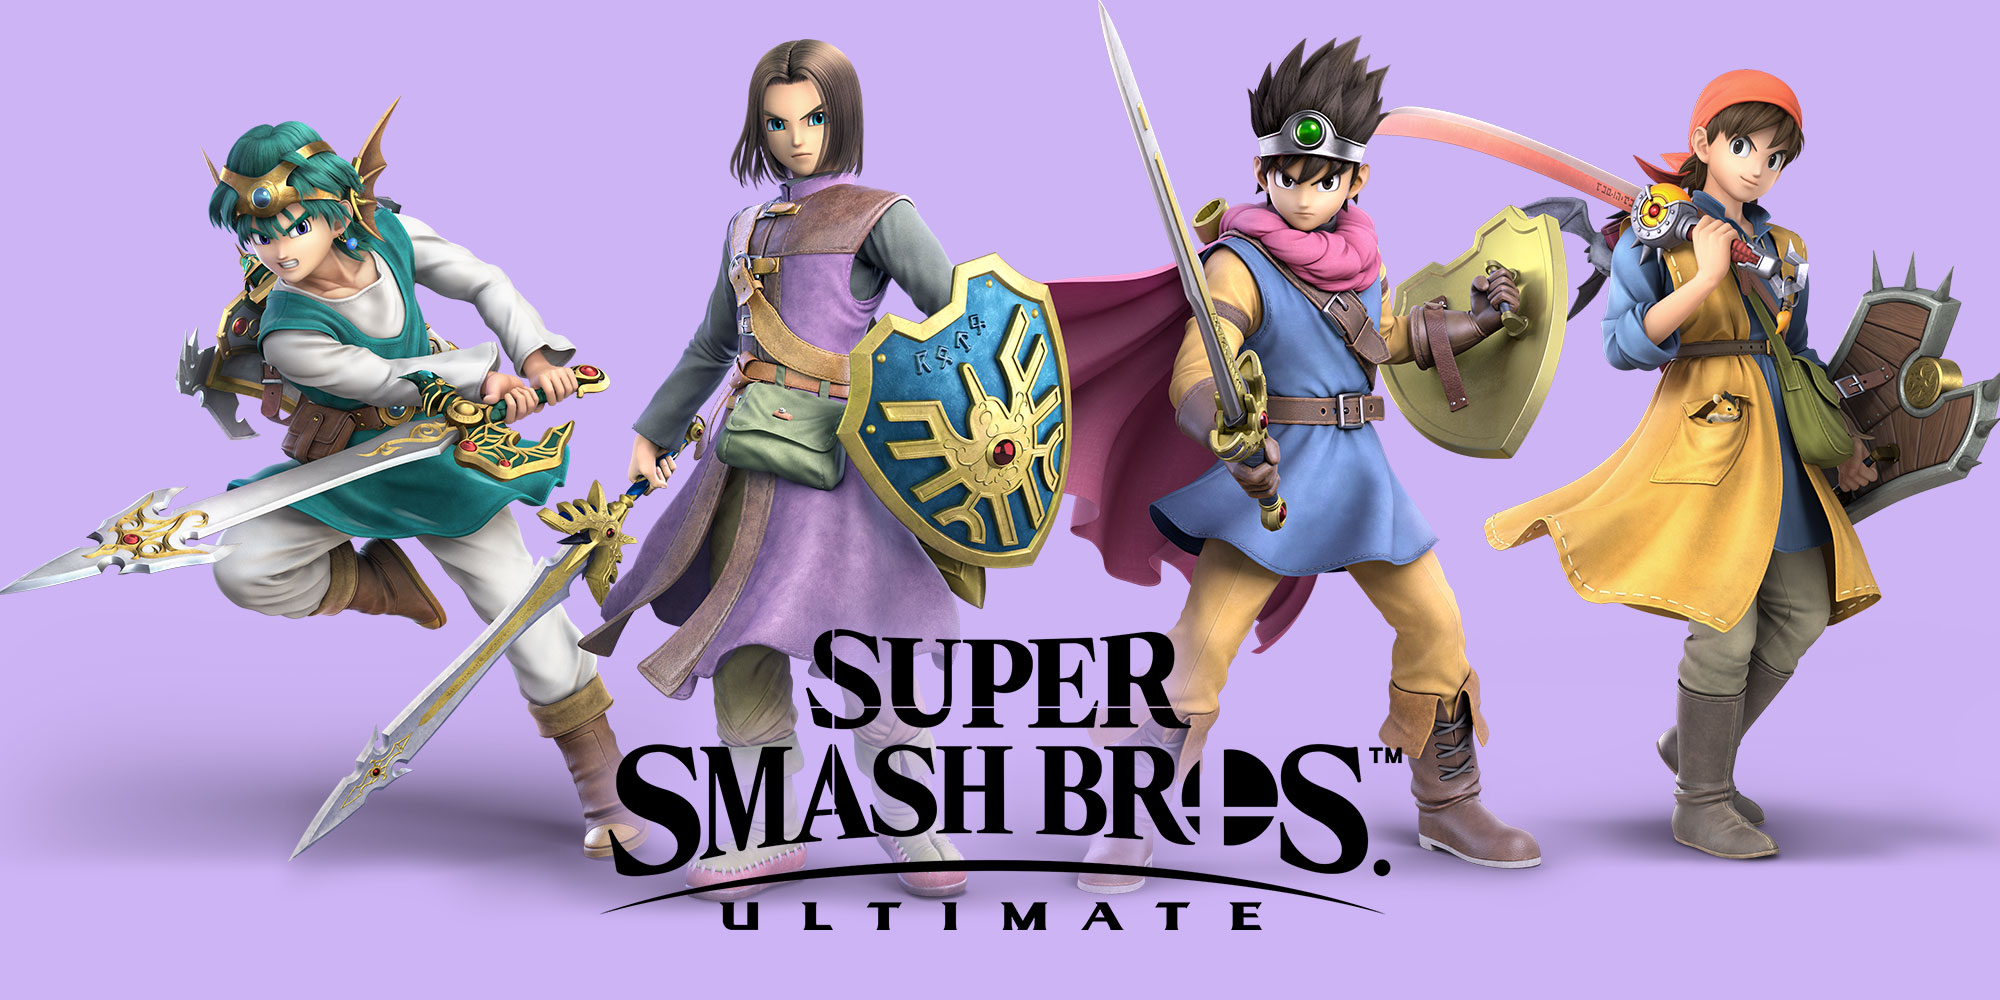 Leroe Di Dragon Quest Debutta In Super Smash Bros Ultimate Il 31 Luglio Notizie Nintendo